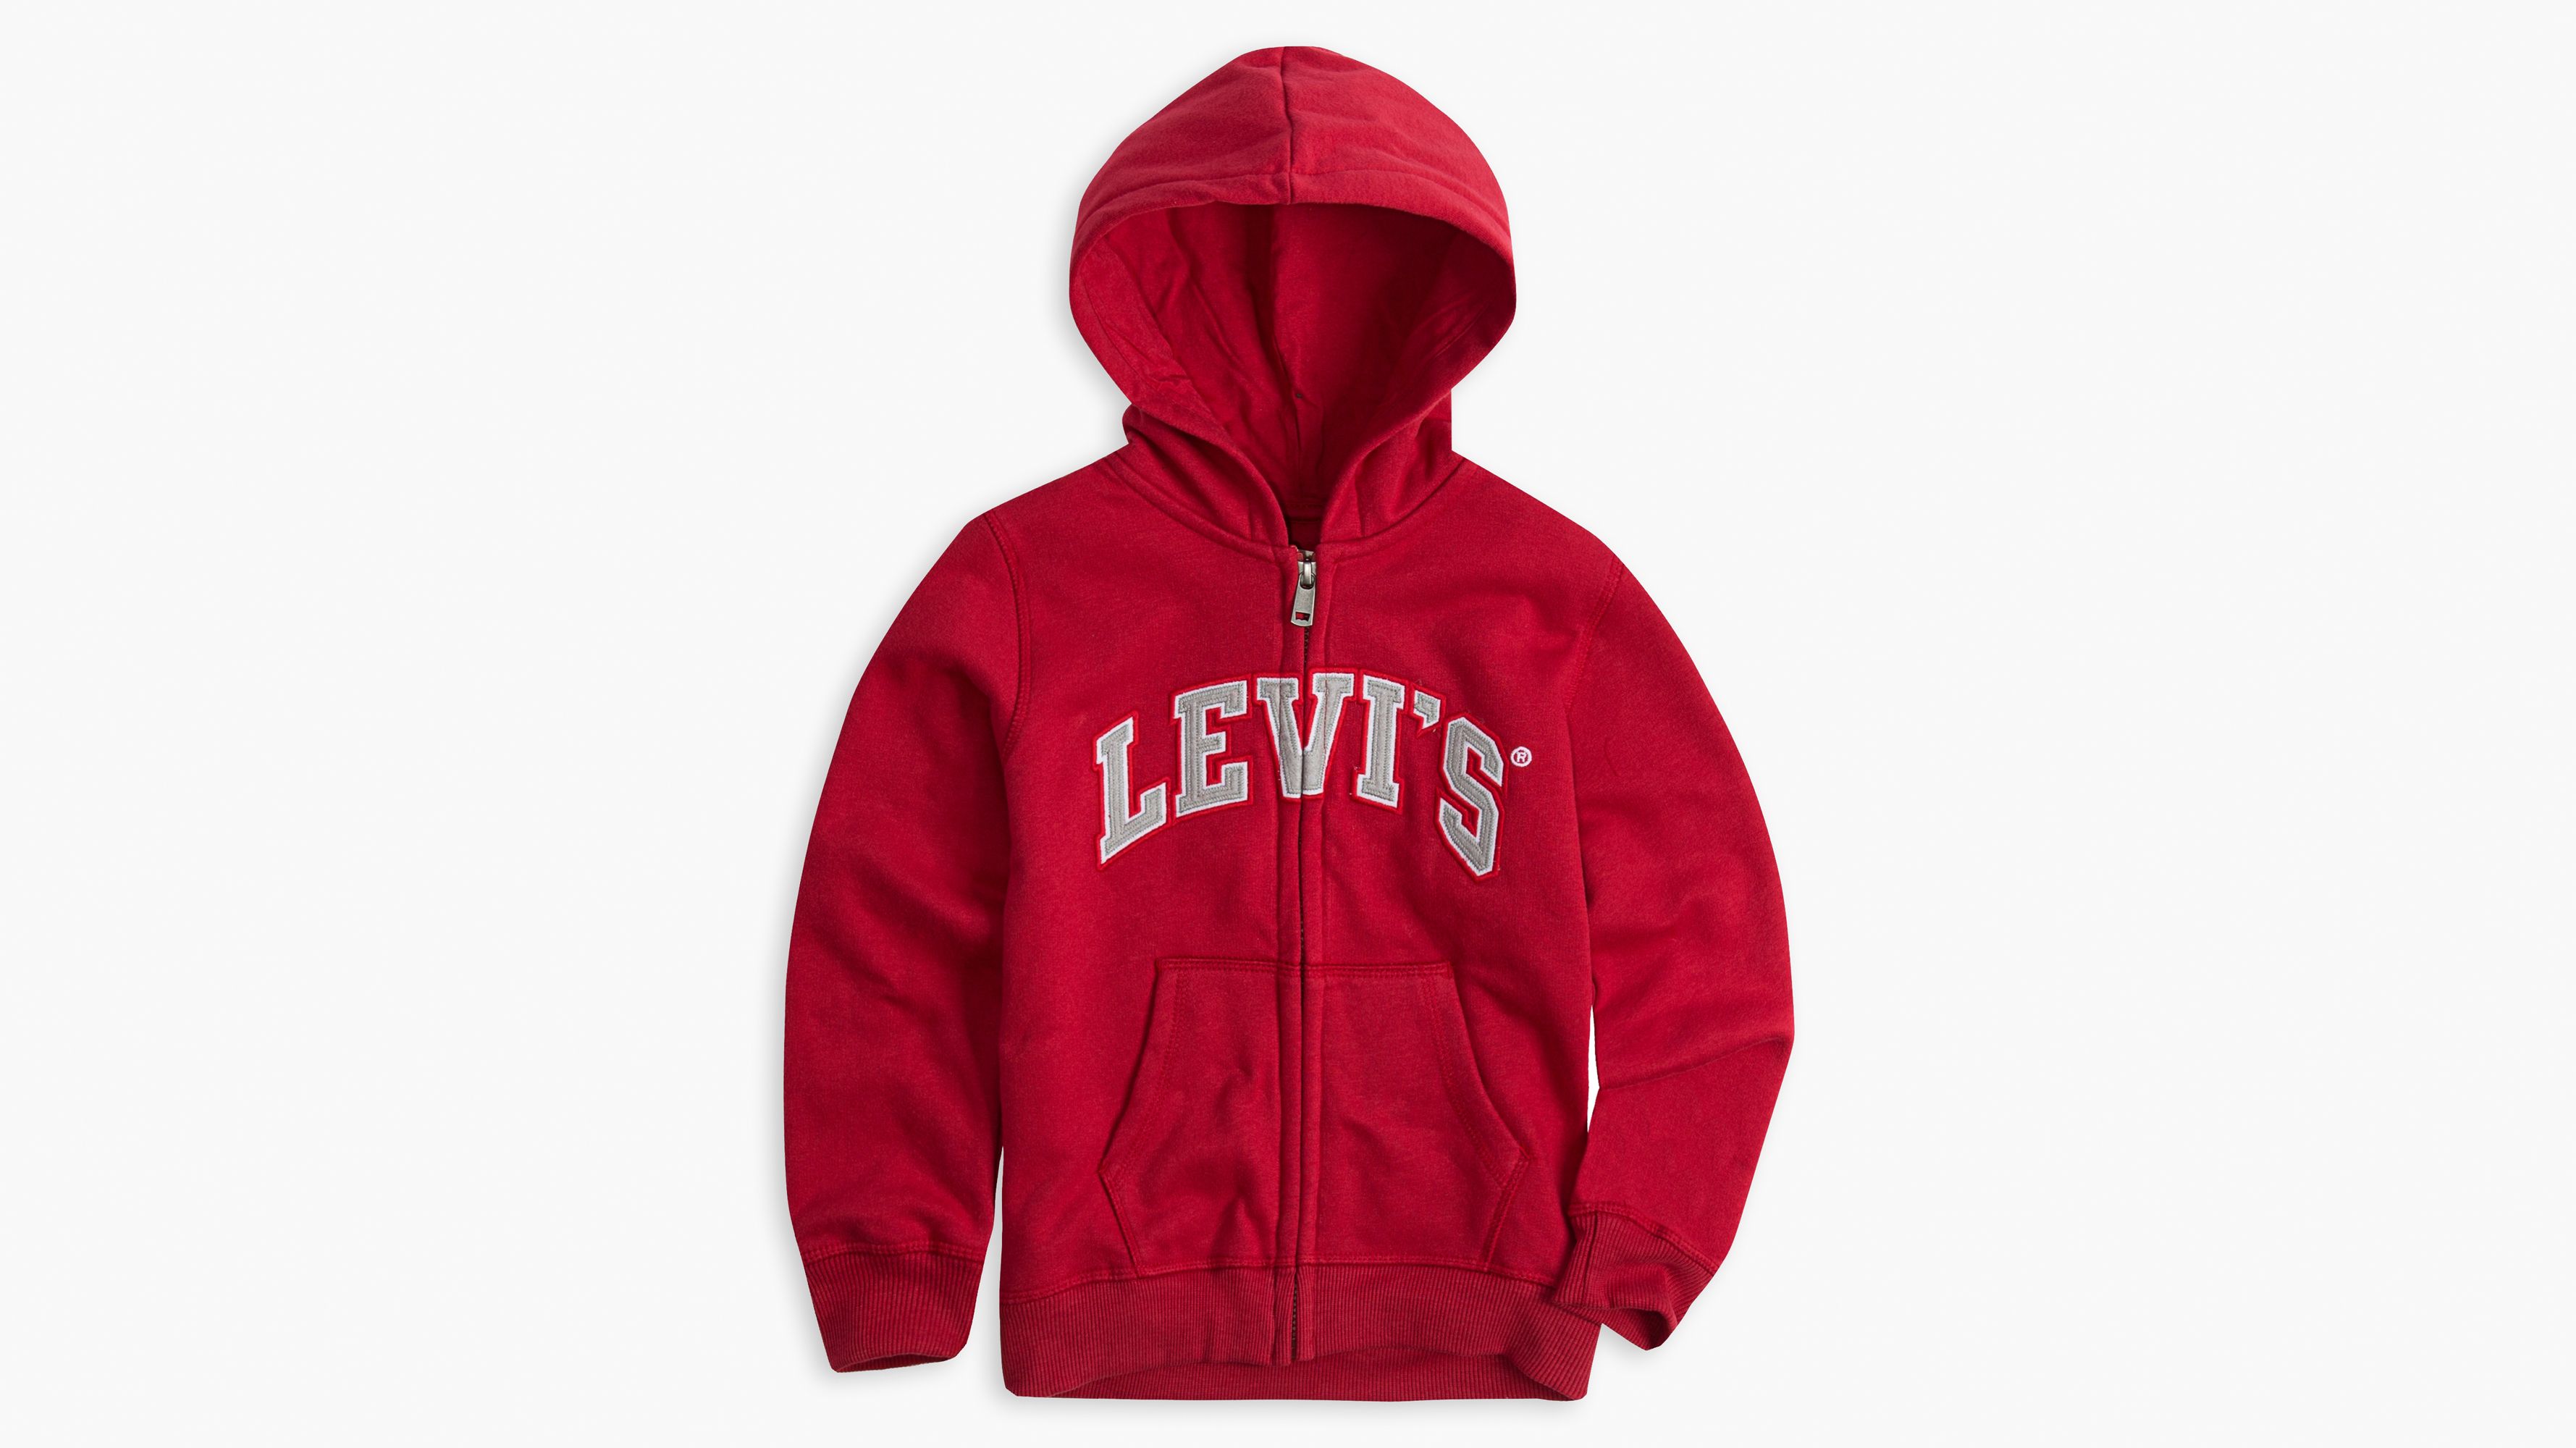 levis hoodie red